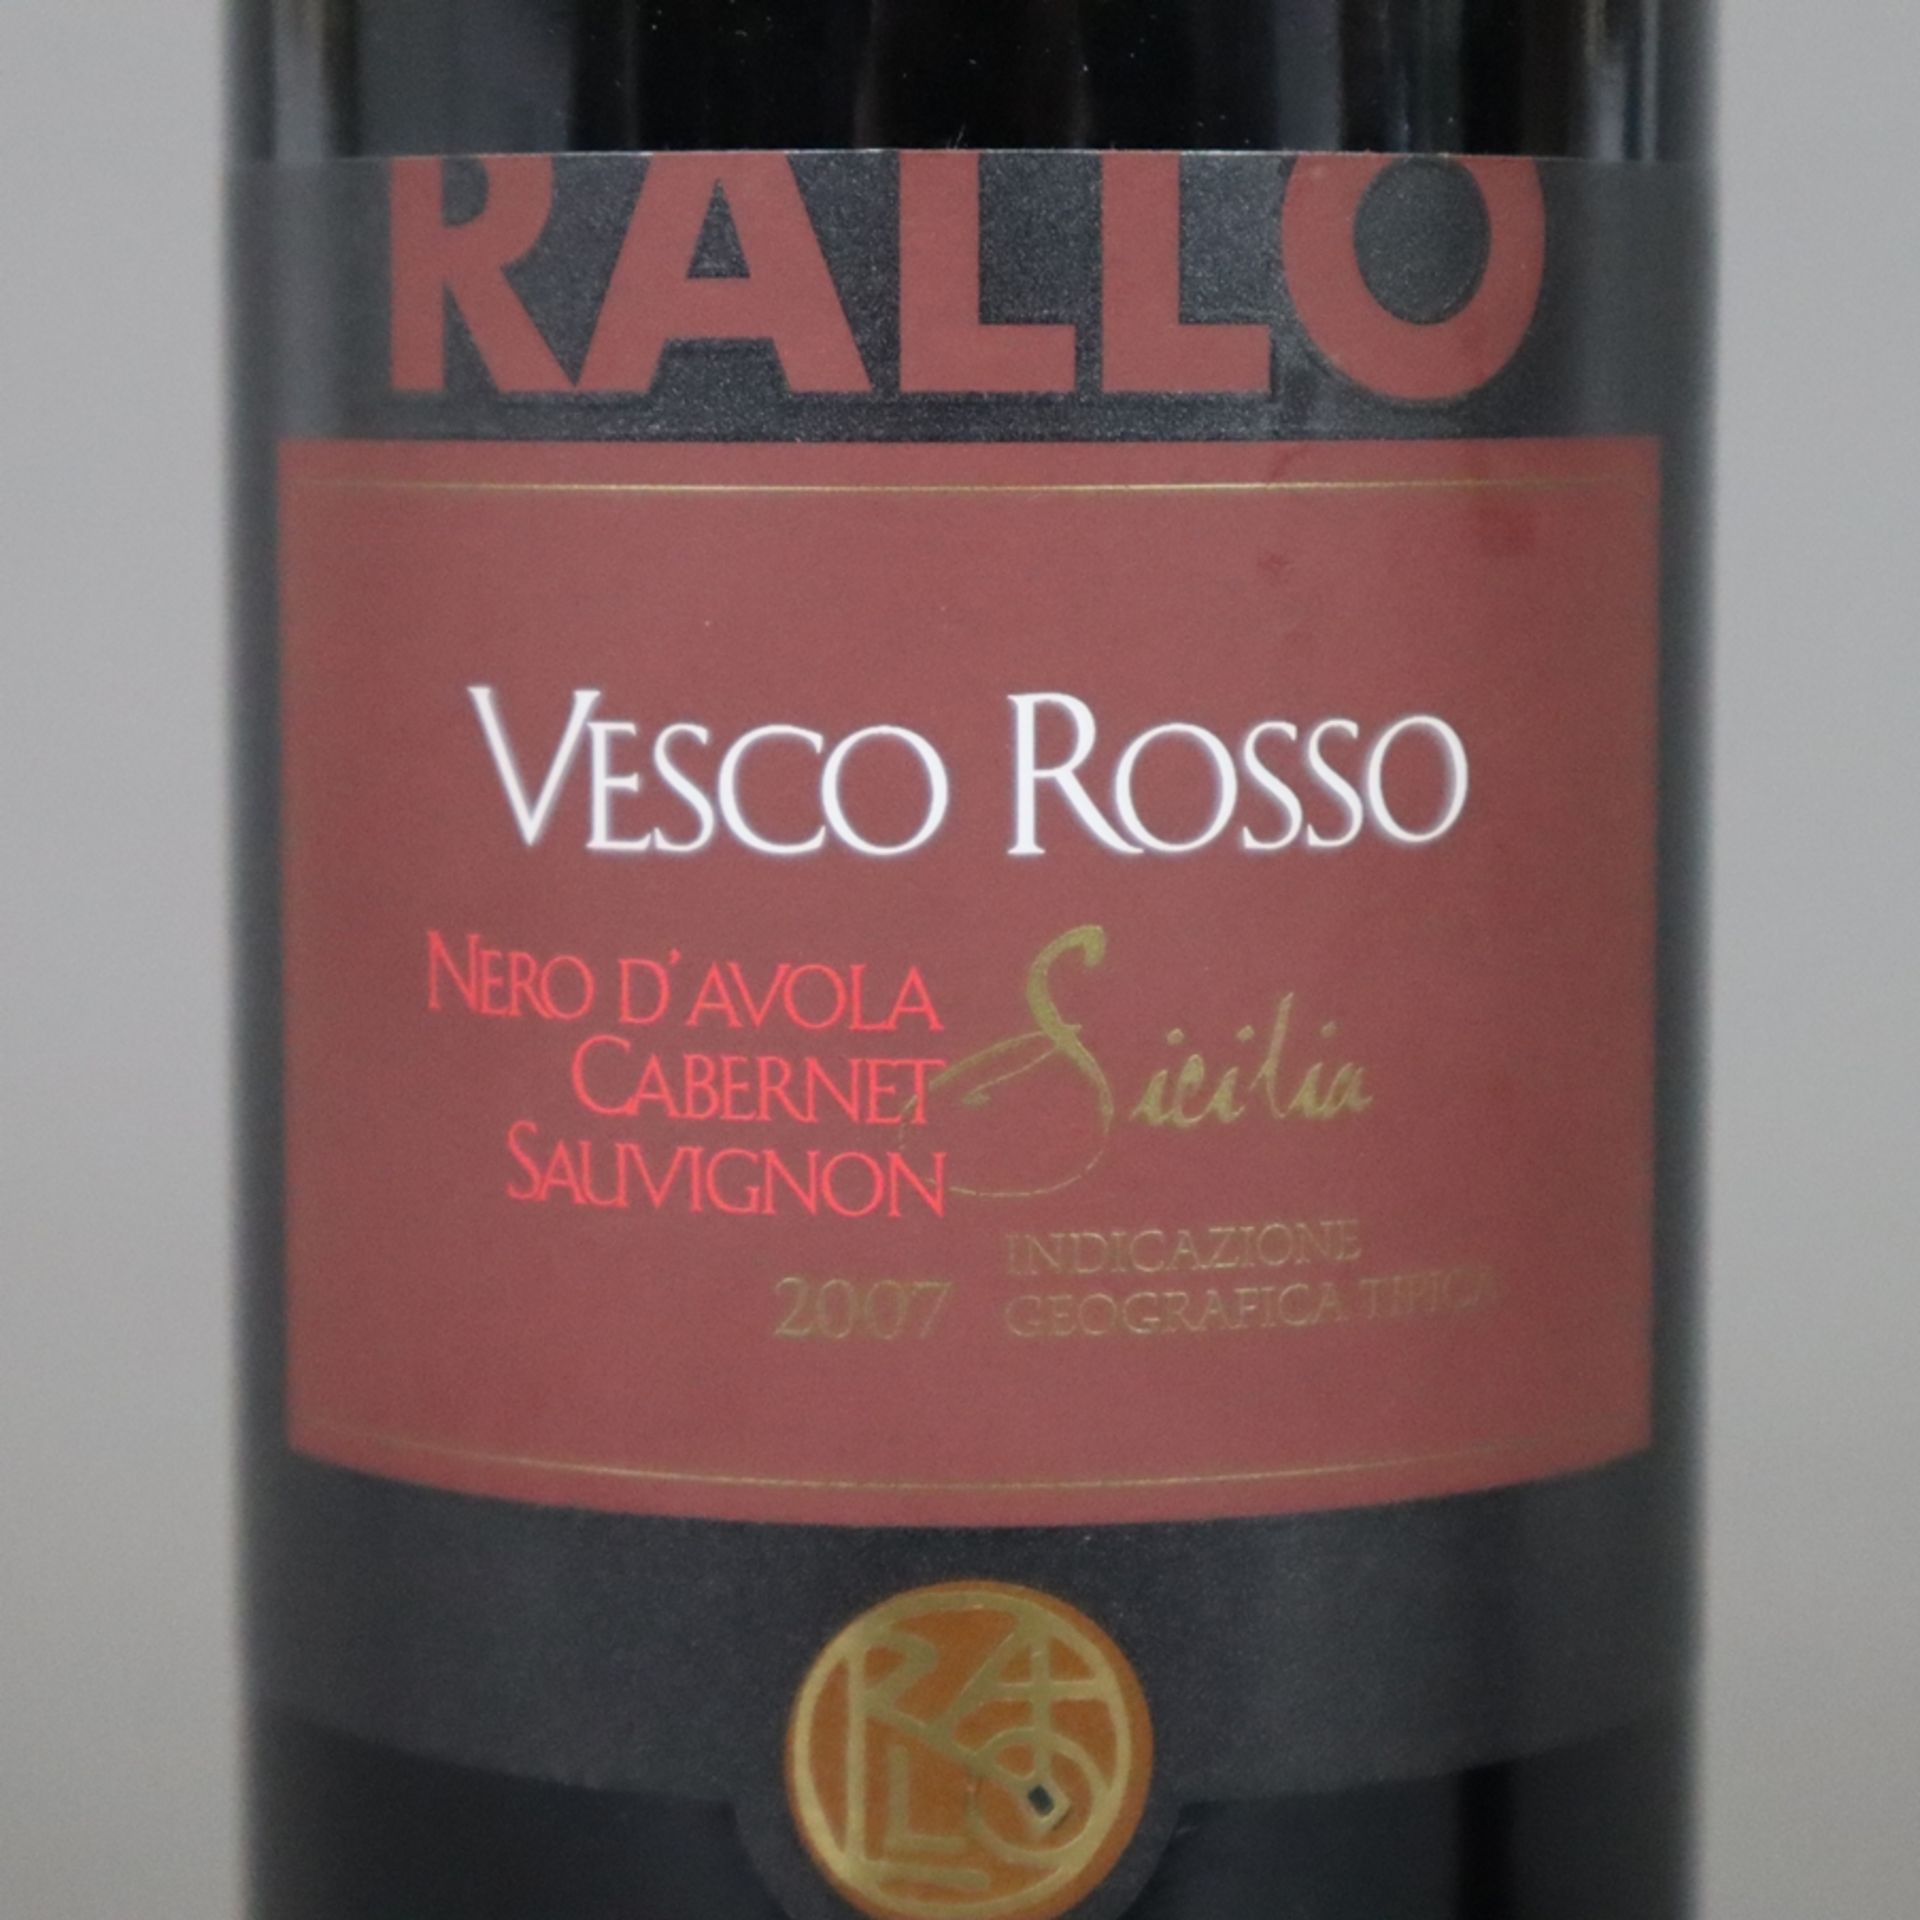 Weinkonvolut - 2 Flaschen 2007 Rallo Vesco Rosso Nero d'Avola /Cabernet Sauvignon Sicilia IG, Itali - Bild 4 aus 5